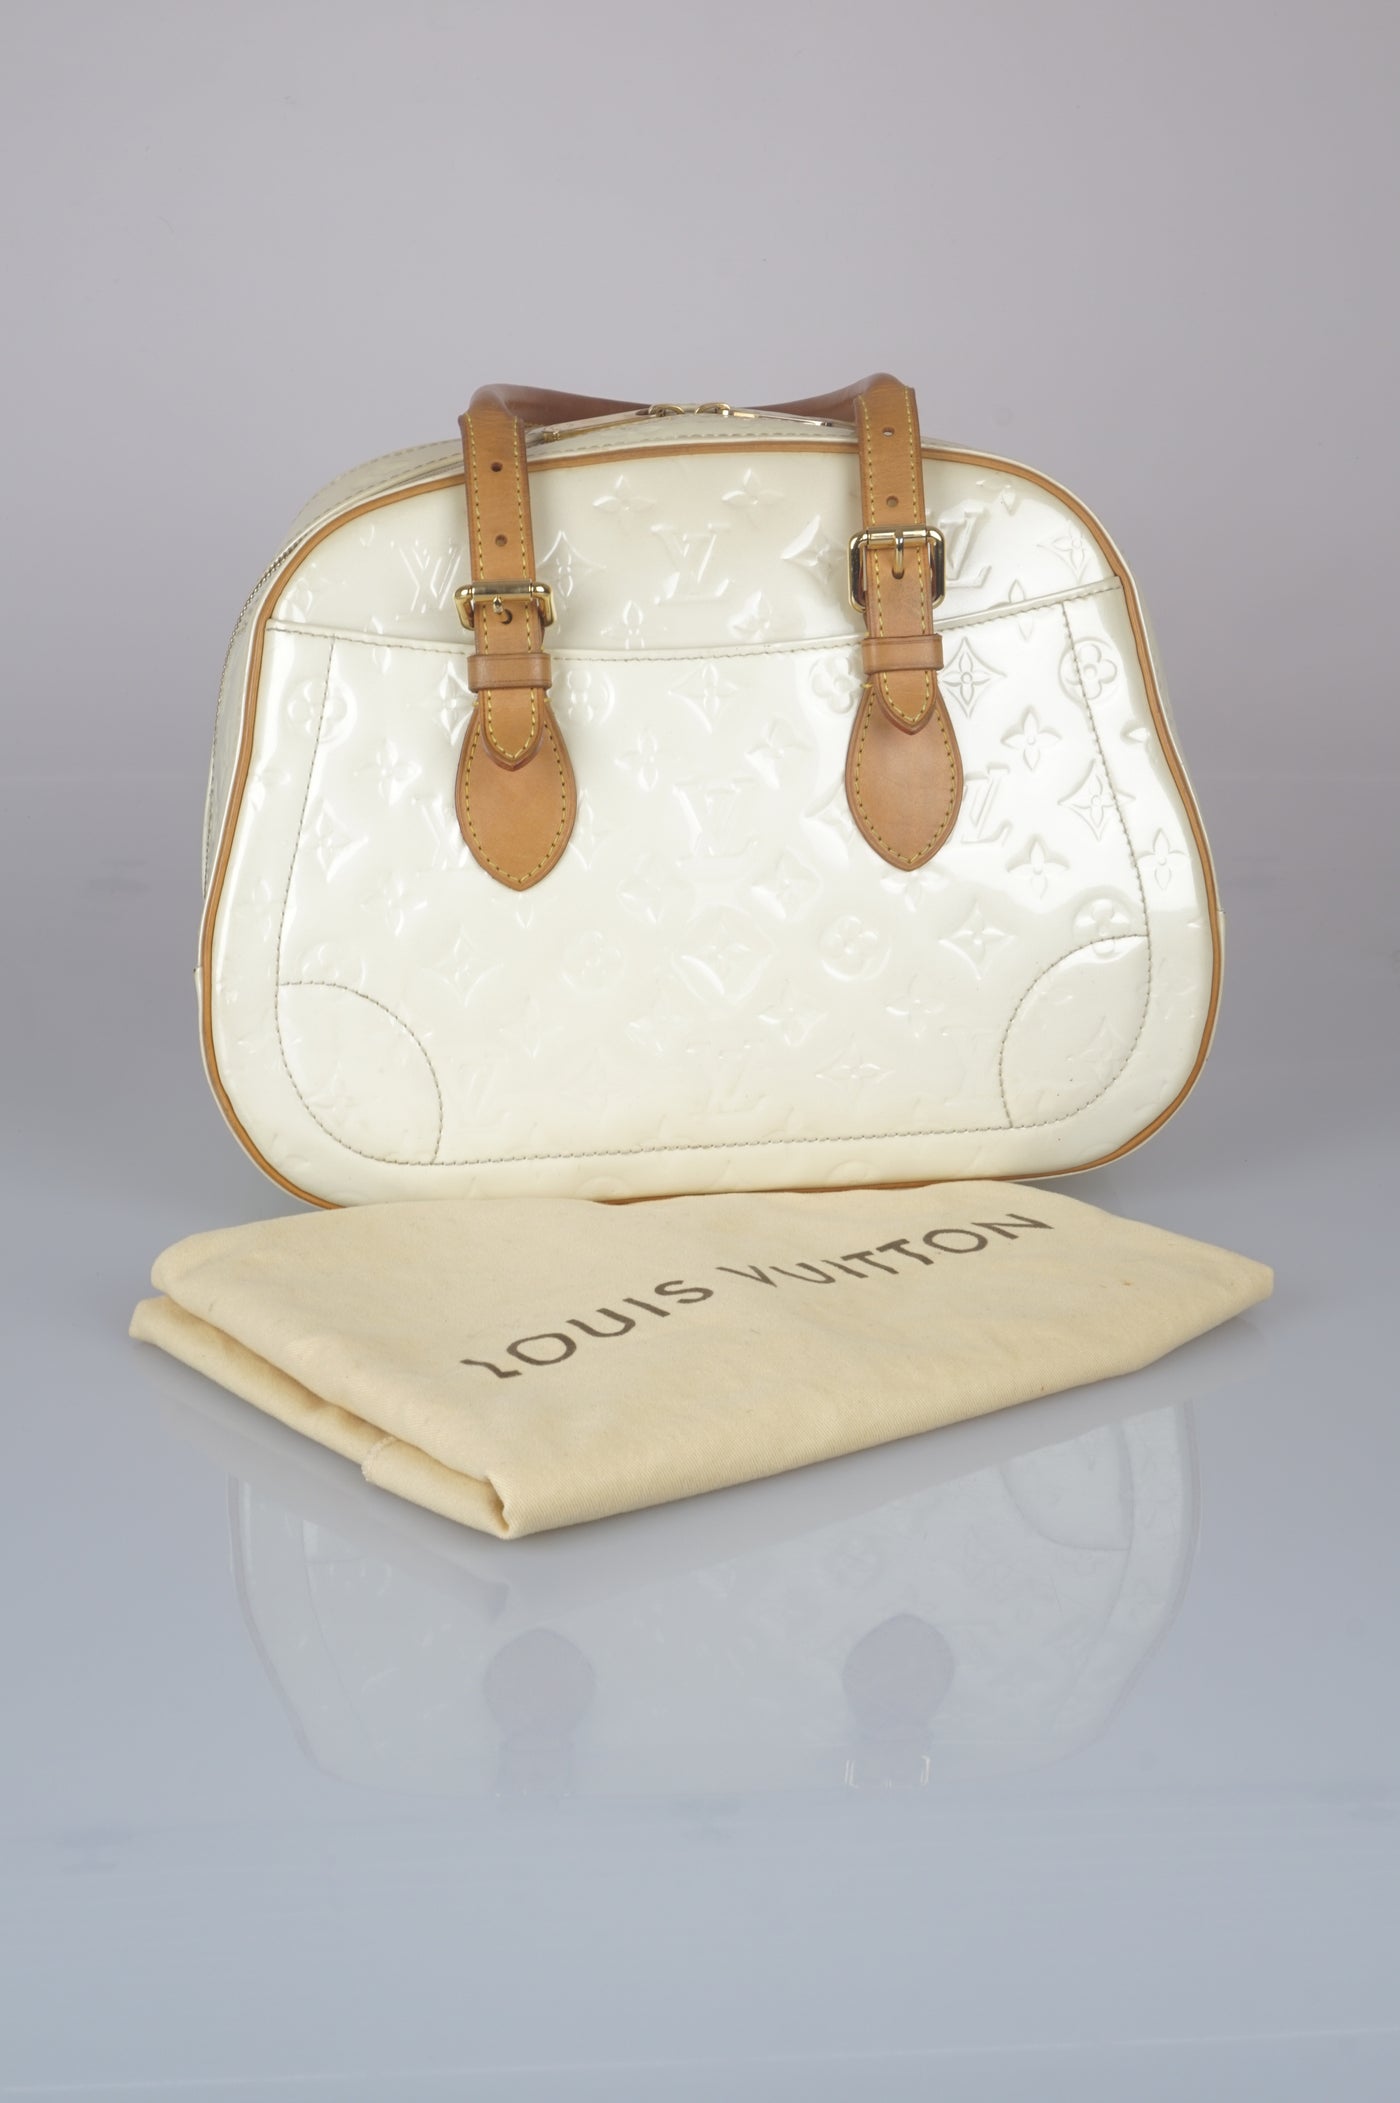 Trouville cream vernis handbag